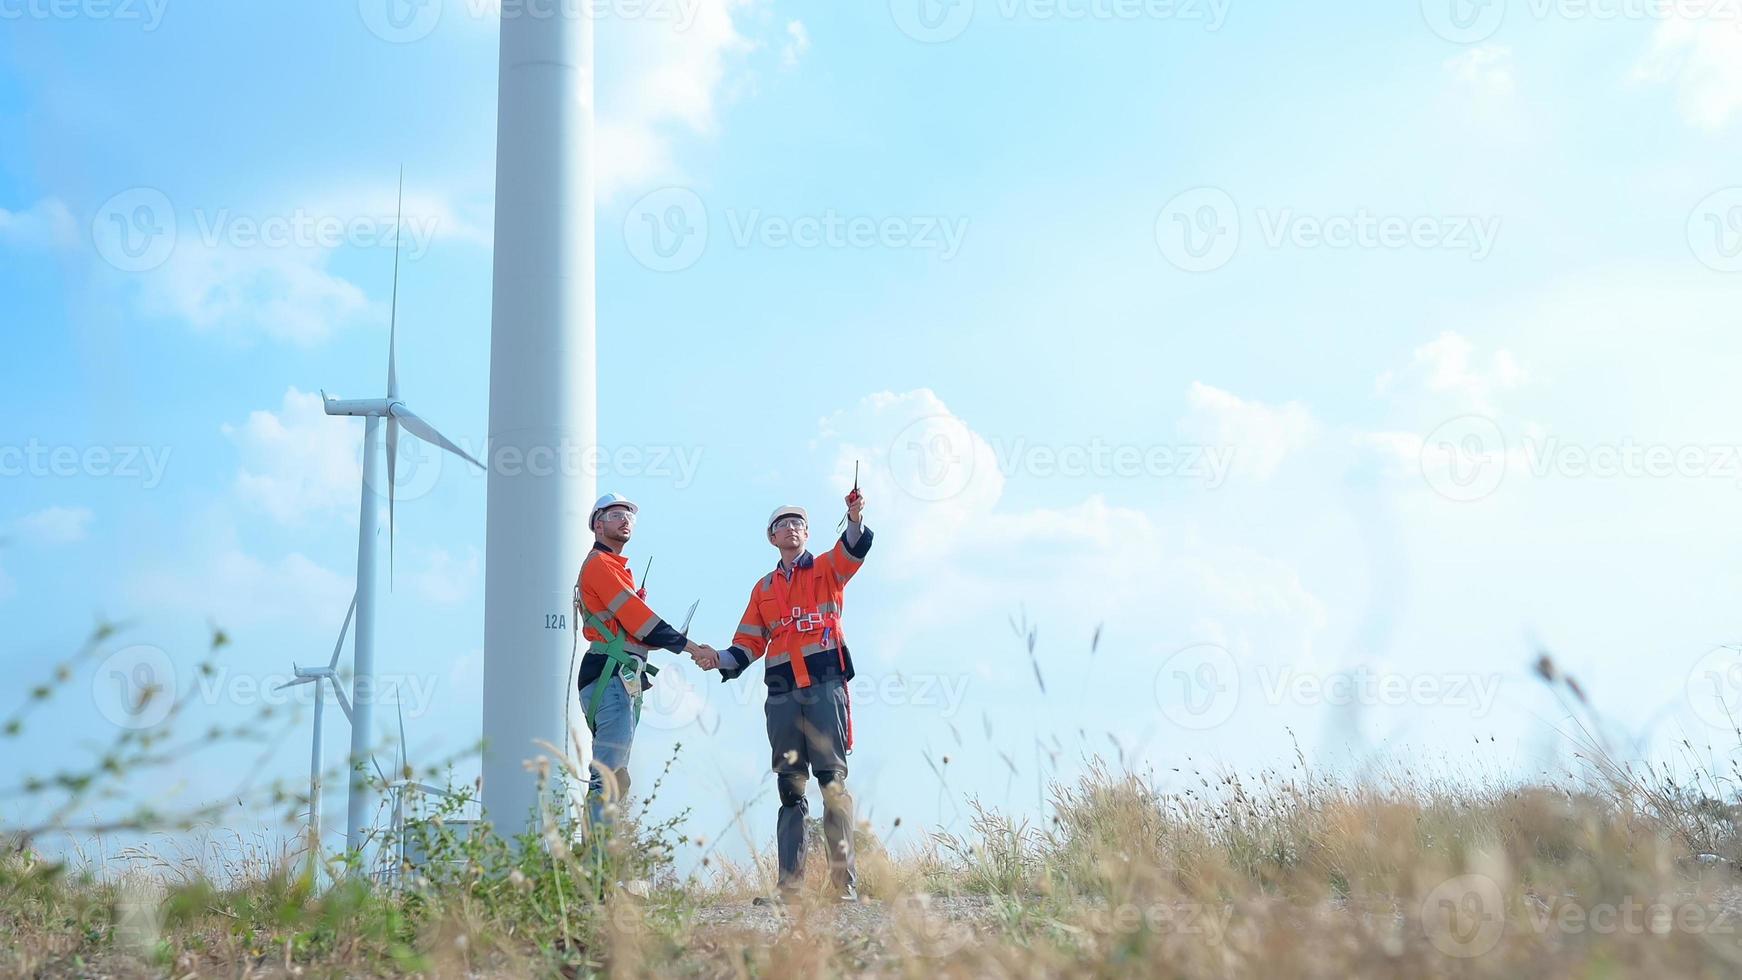 landmeter en ingenieur onderzoeken de rendement van gigantisch wind turbines dat transformeren wind energie in elektrisch energie dat is vervolgens gebruikt in dagelijks leven. foto